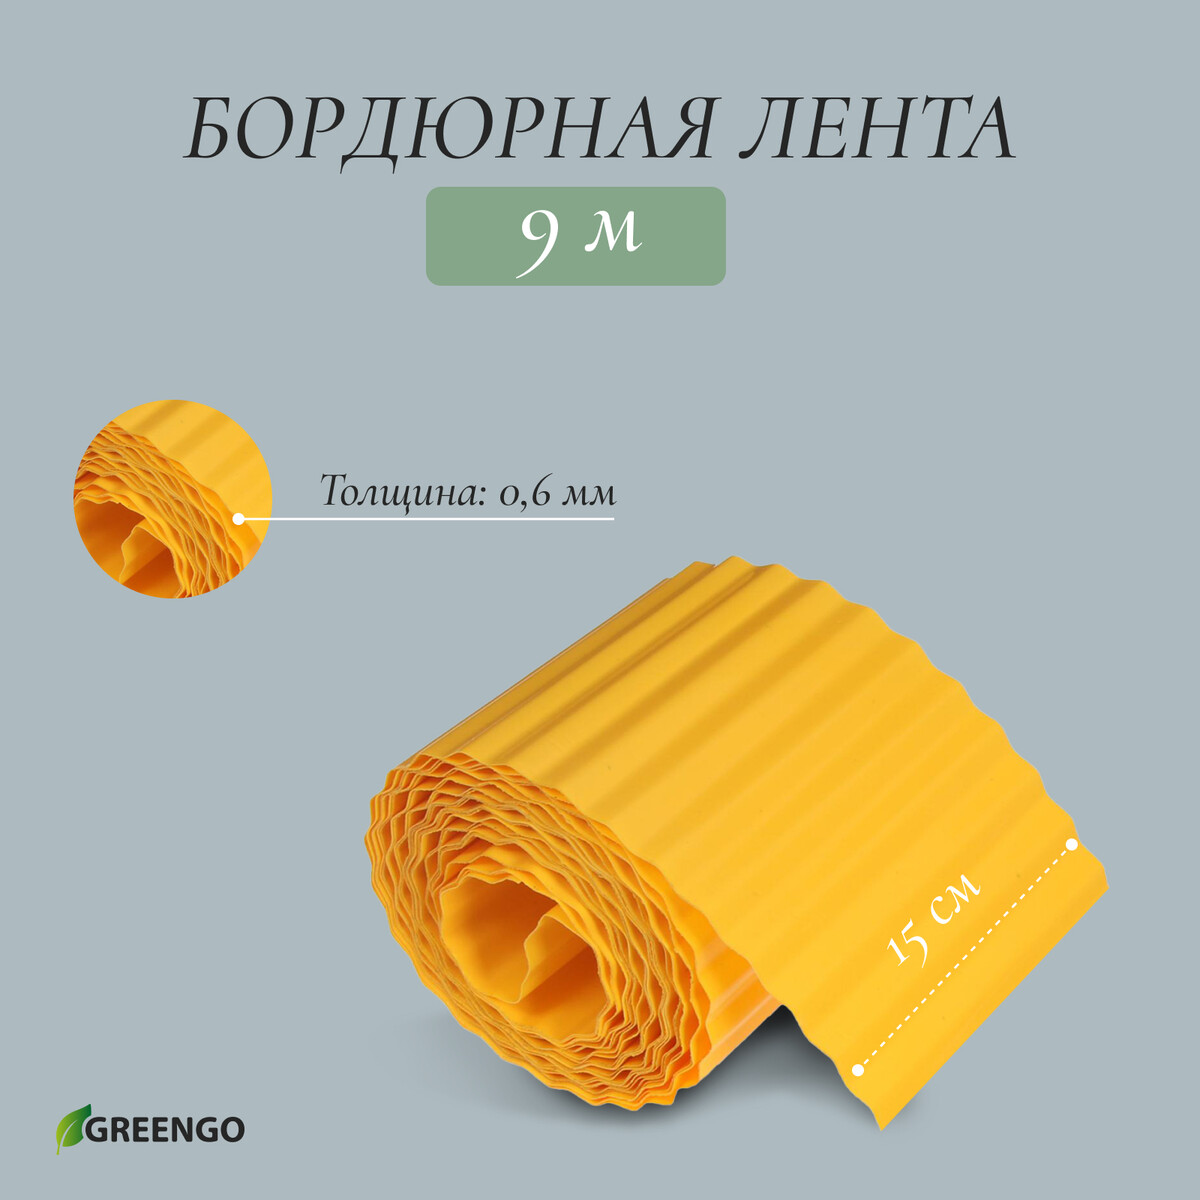 Лента бордюрная, 0.15 × 9 м, толщина 0.6 мм, пластиковая, гофра, желтая, greengo